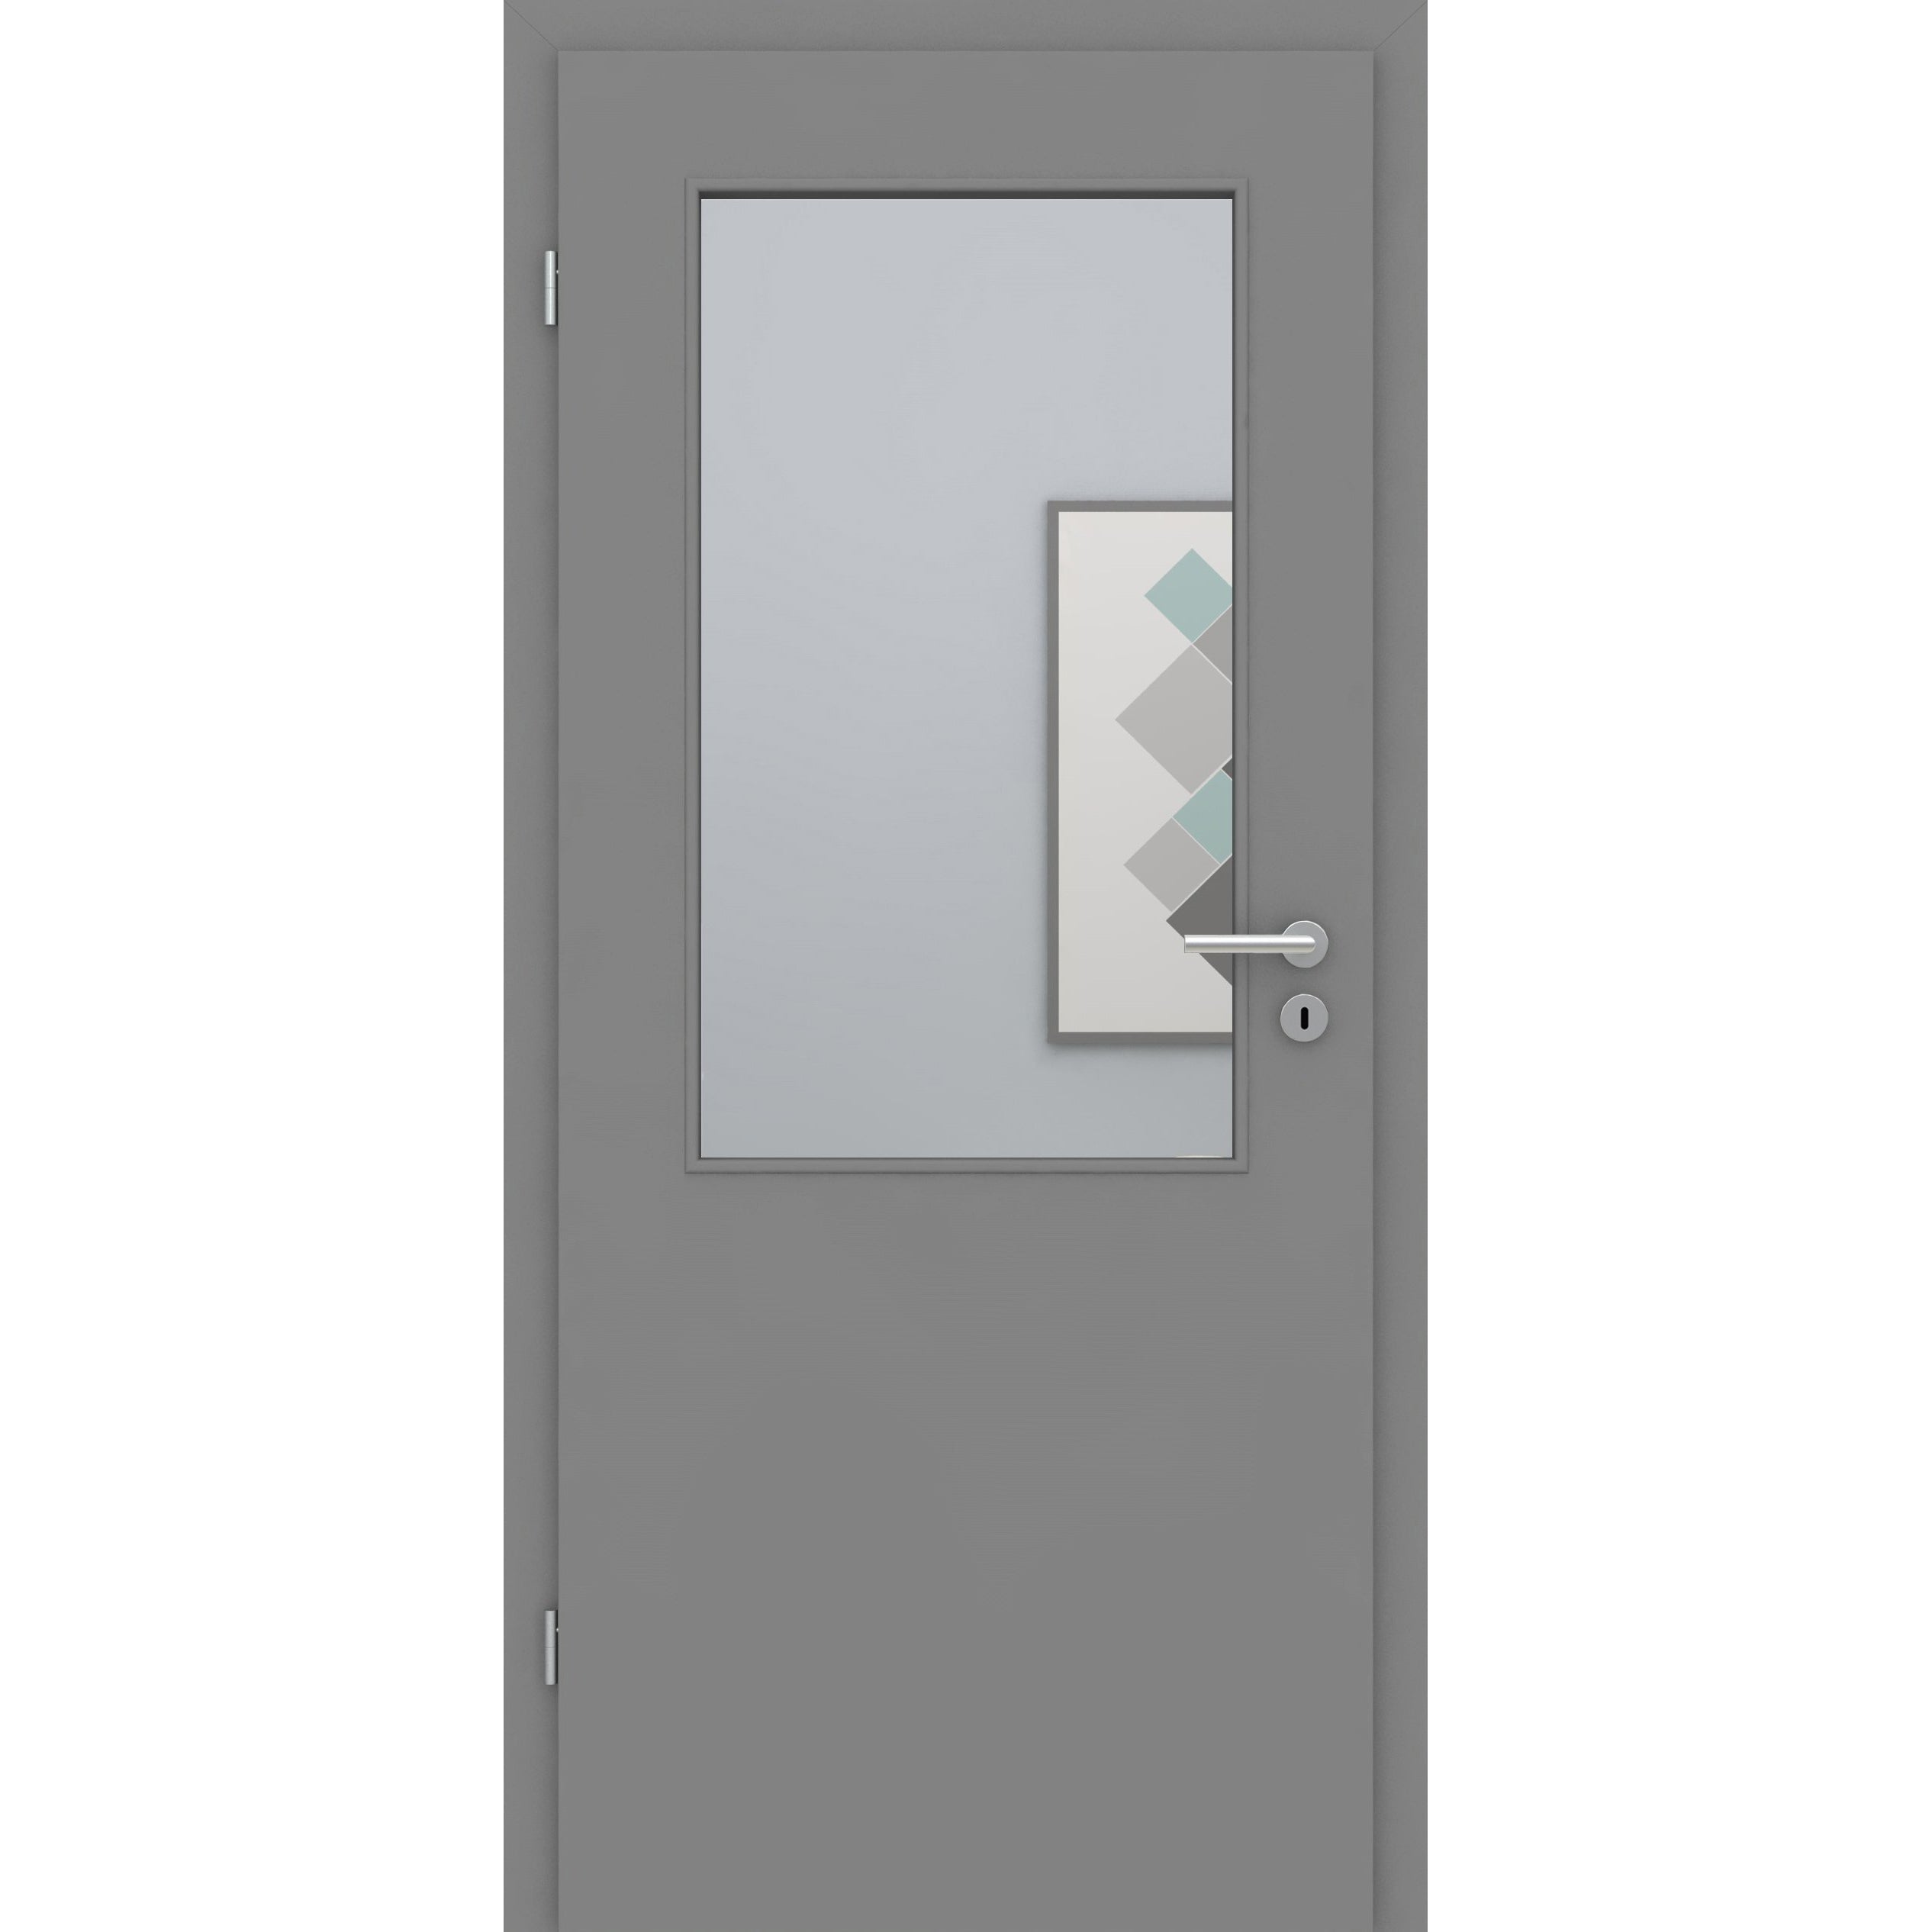 Zimmertür mit Zarge und Lichtausschnitt grau glatt Designkante - Modell LAA